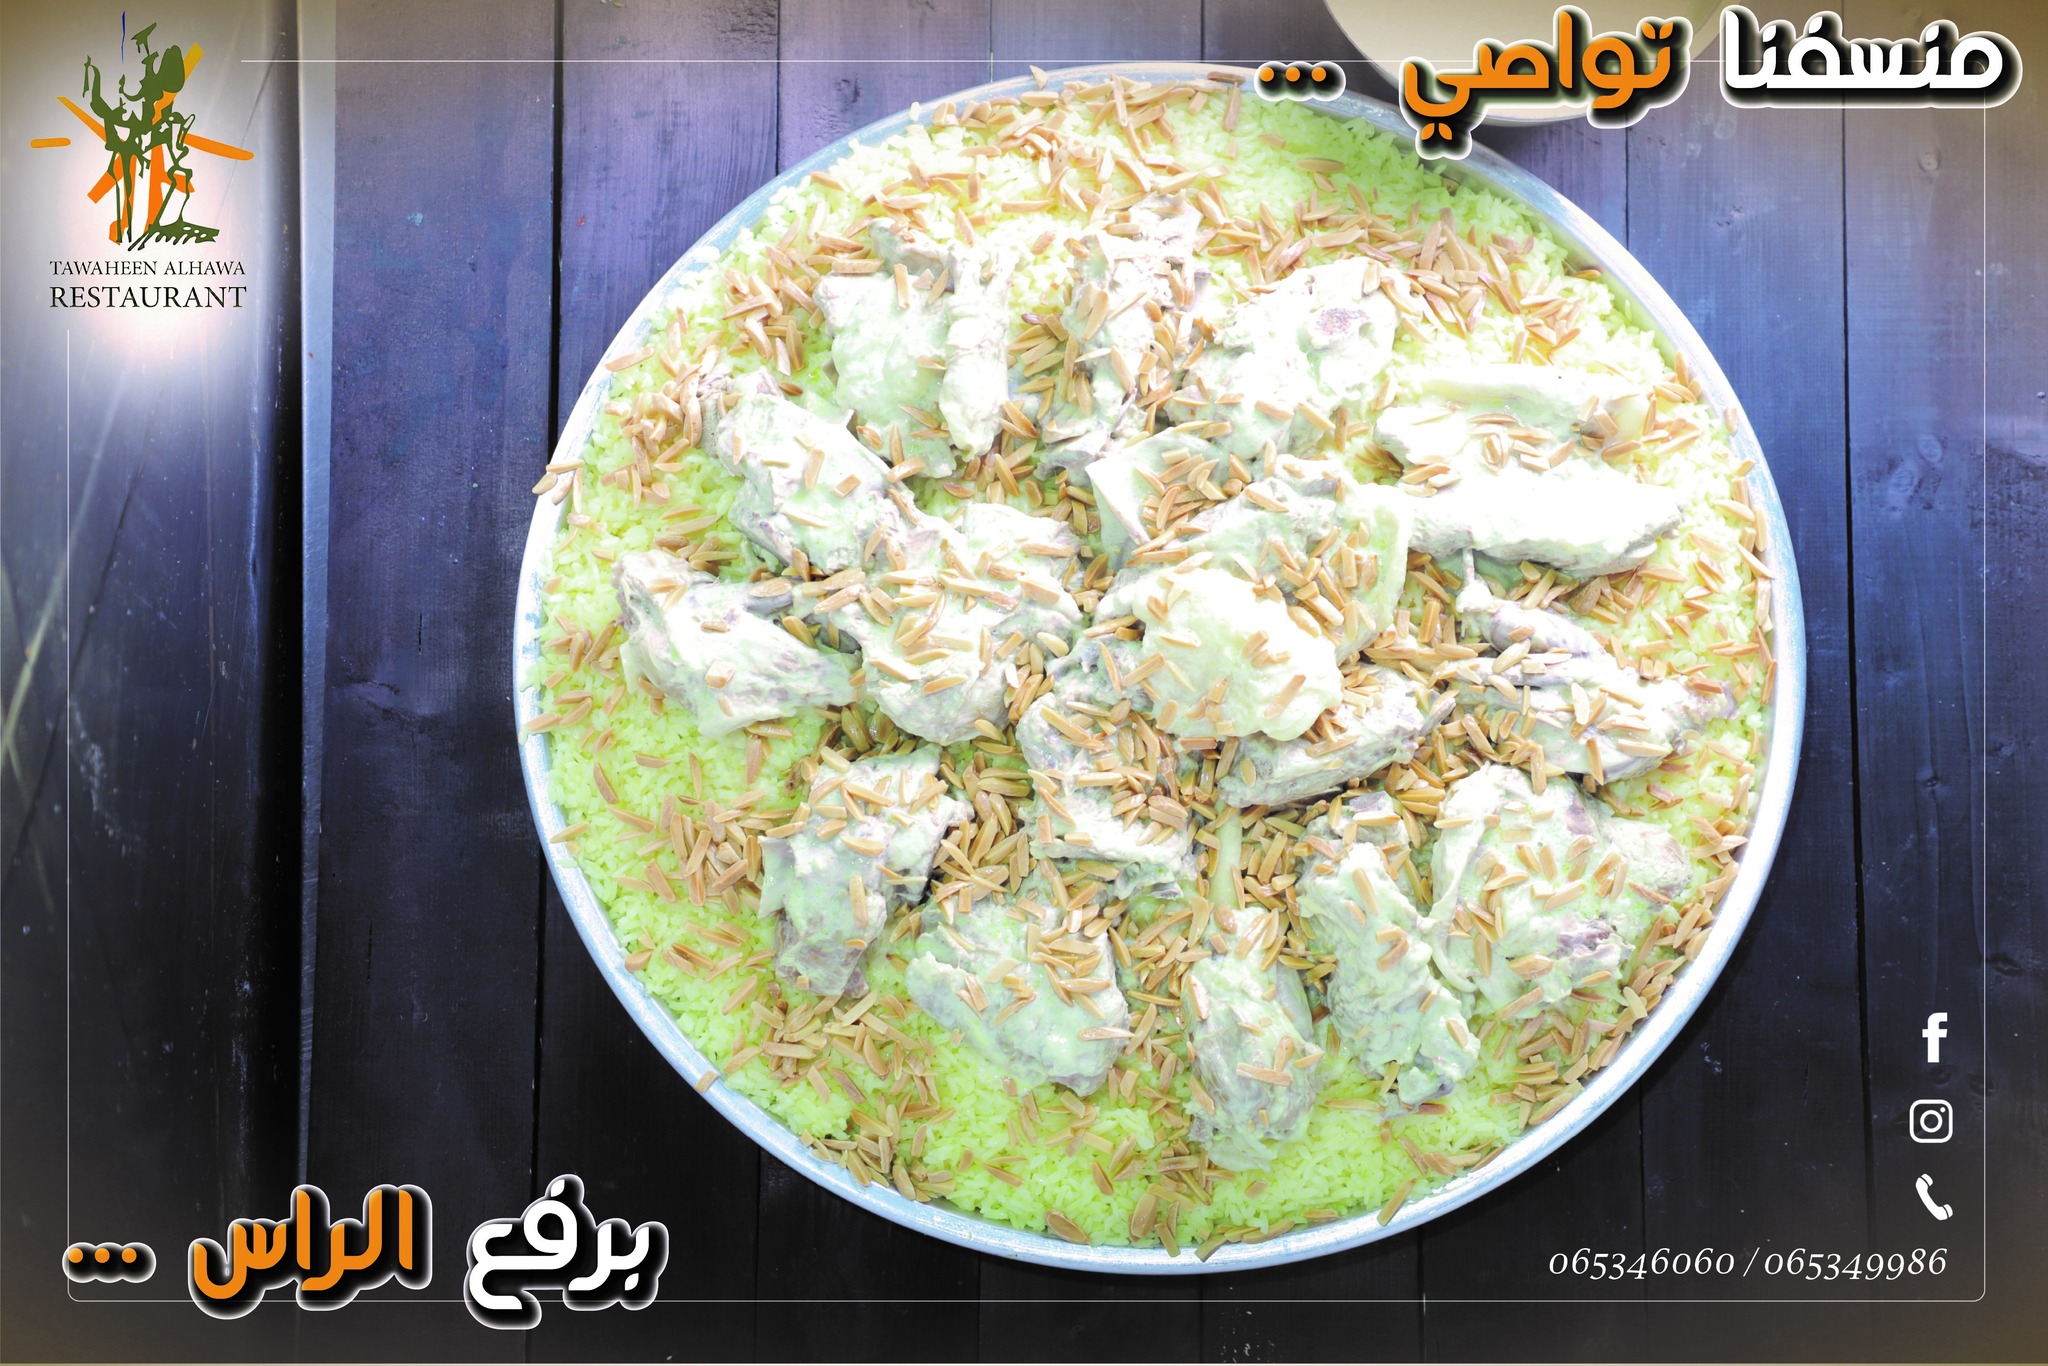 افضل مطاعم تواصي منسف في عمان, الاردن - مطعم طواحين الهوا - عروض واسعار تواصي منسف باللحم البلدي